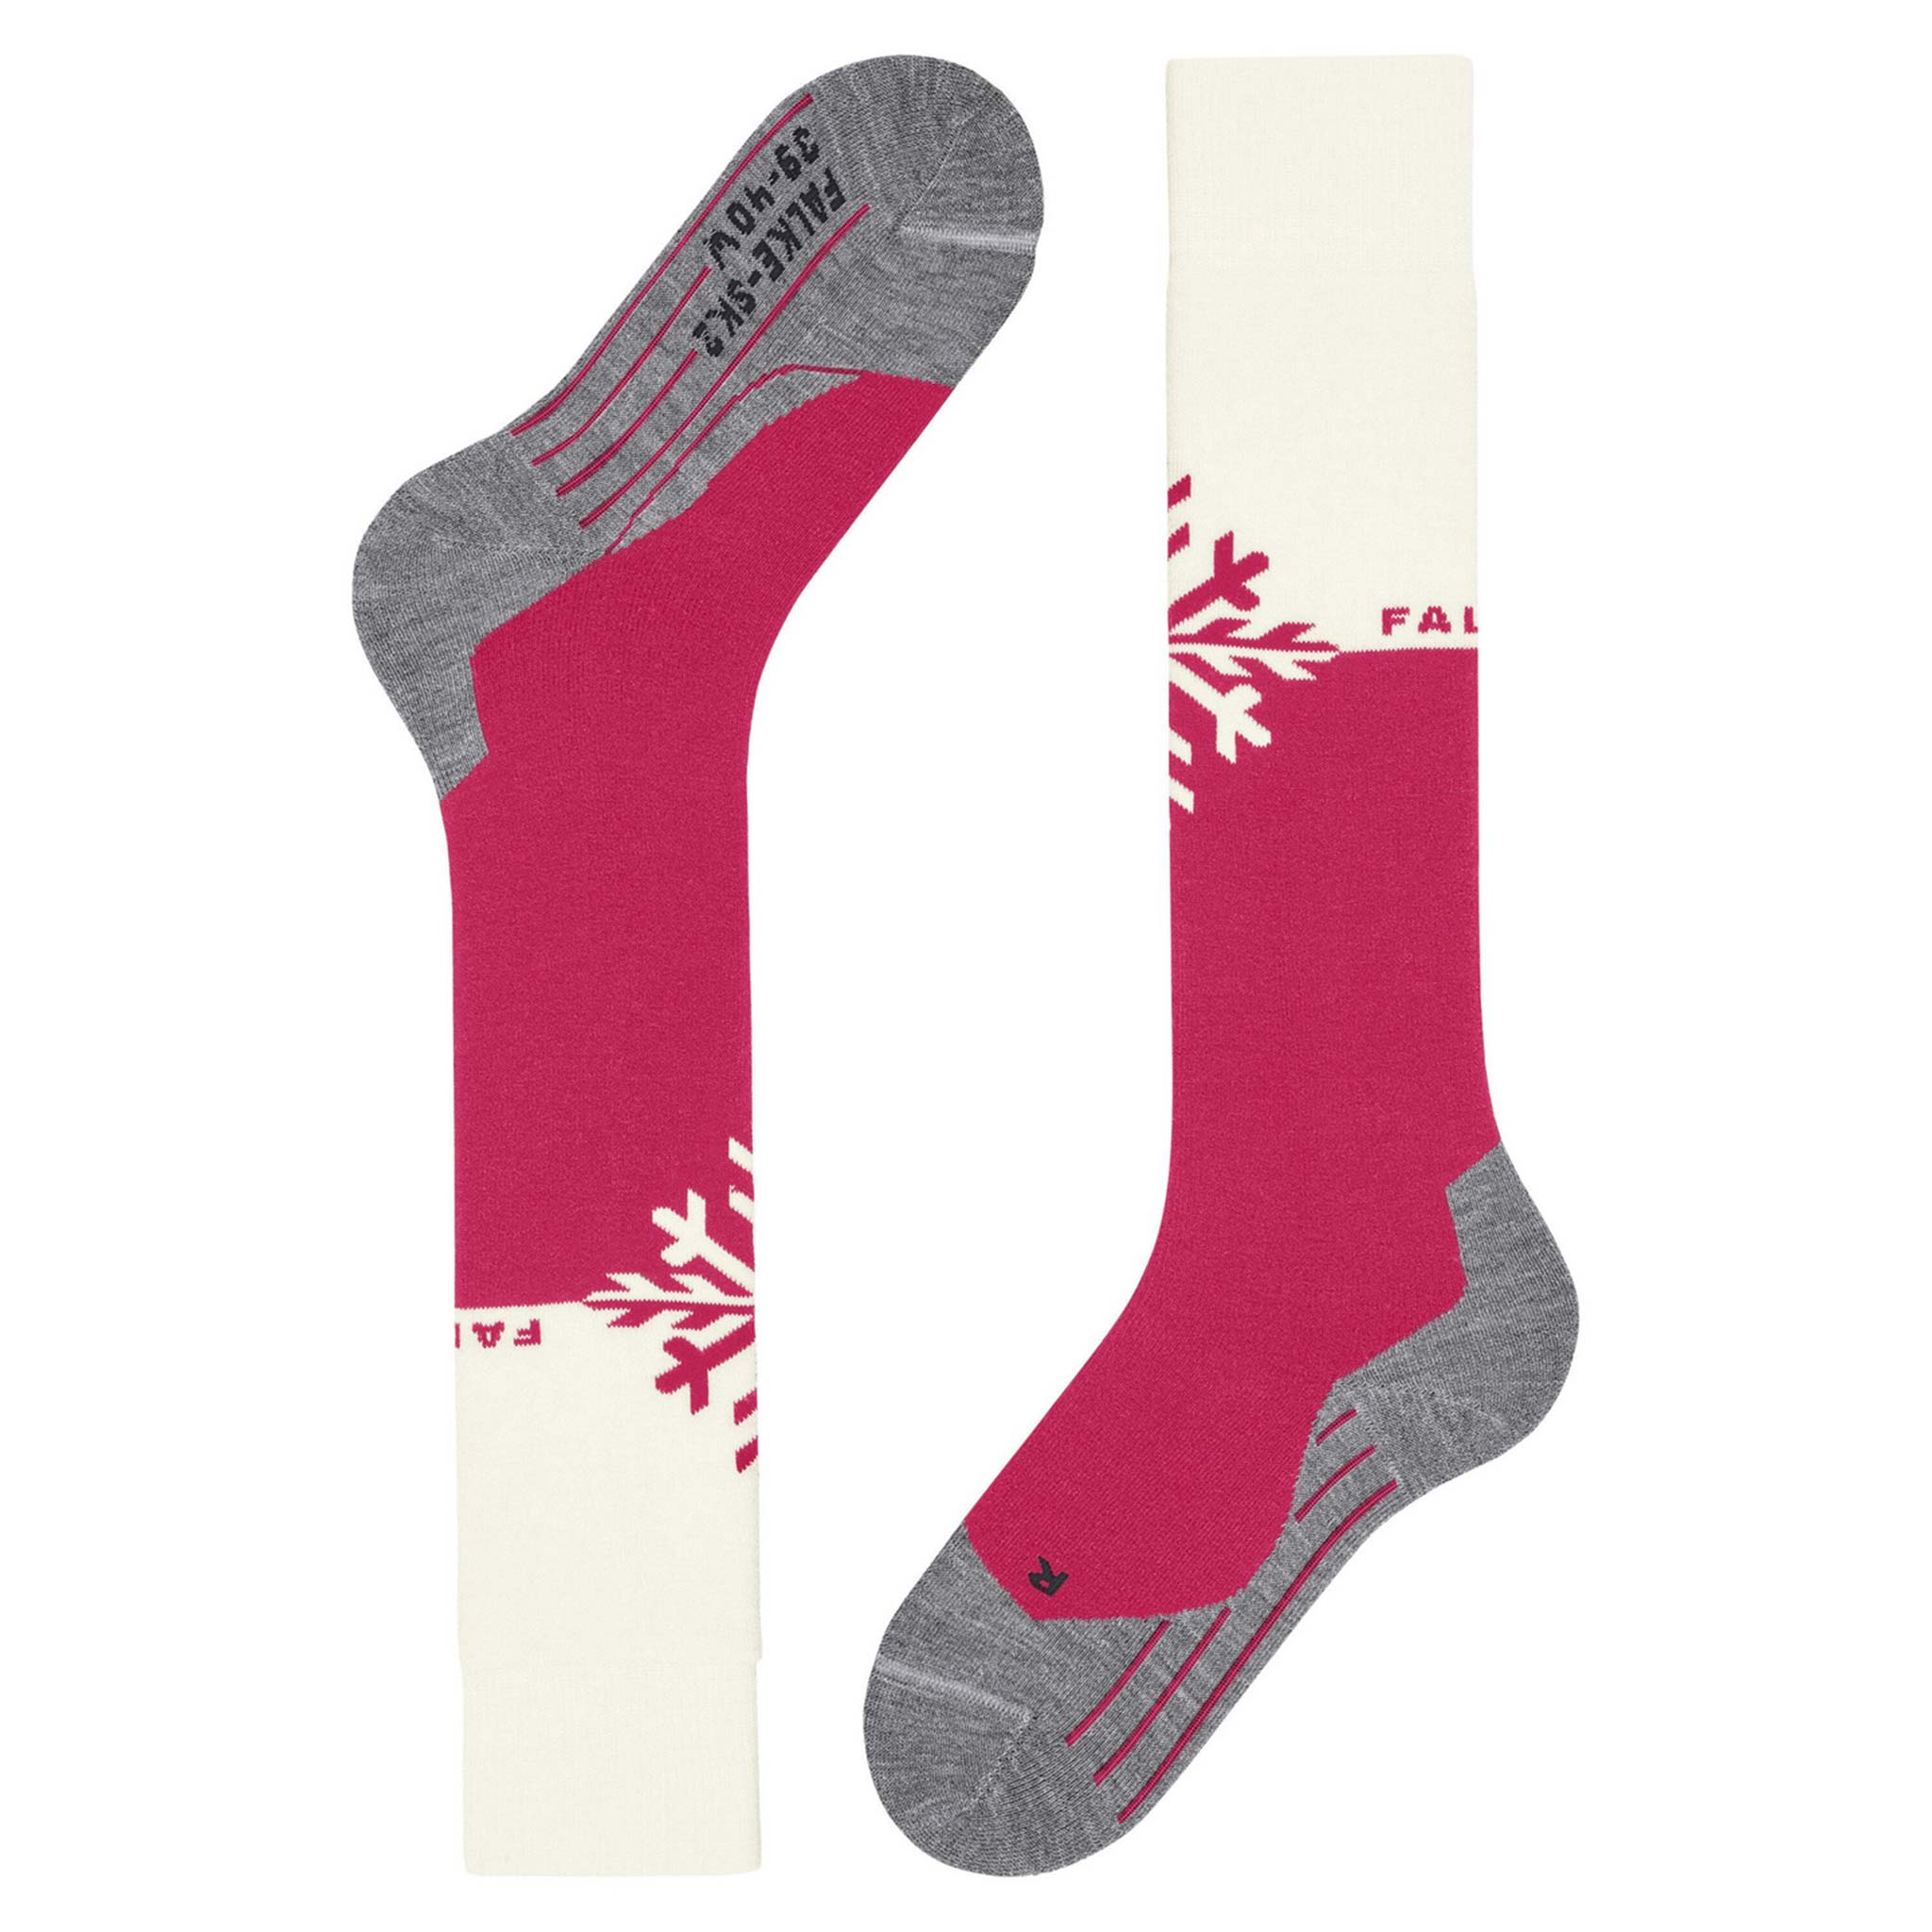 SK2 Women’s Ski Socks in Snowflake Rose